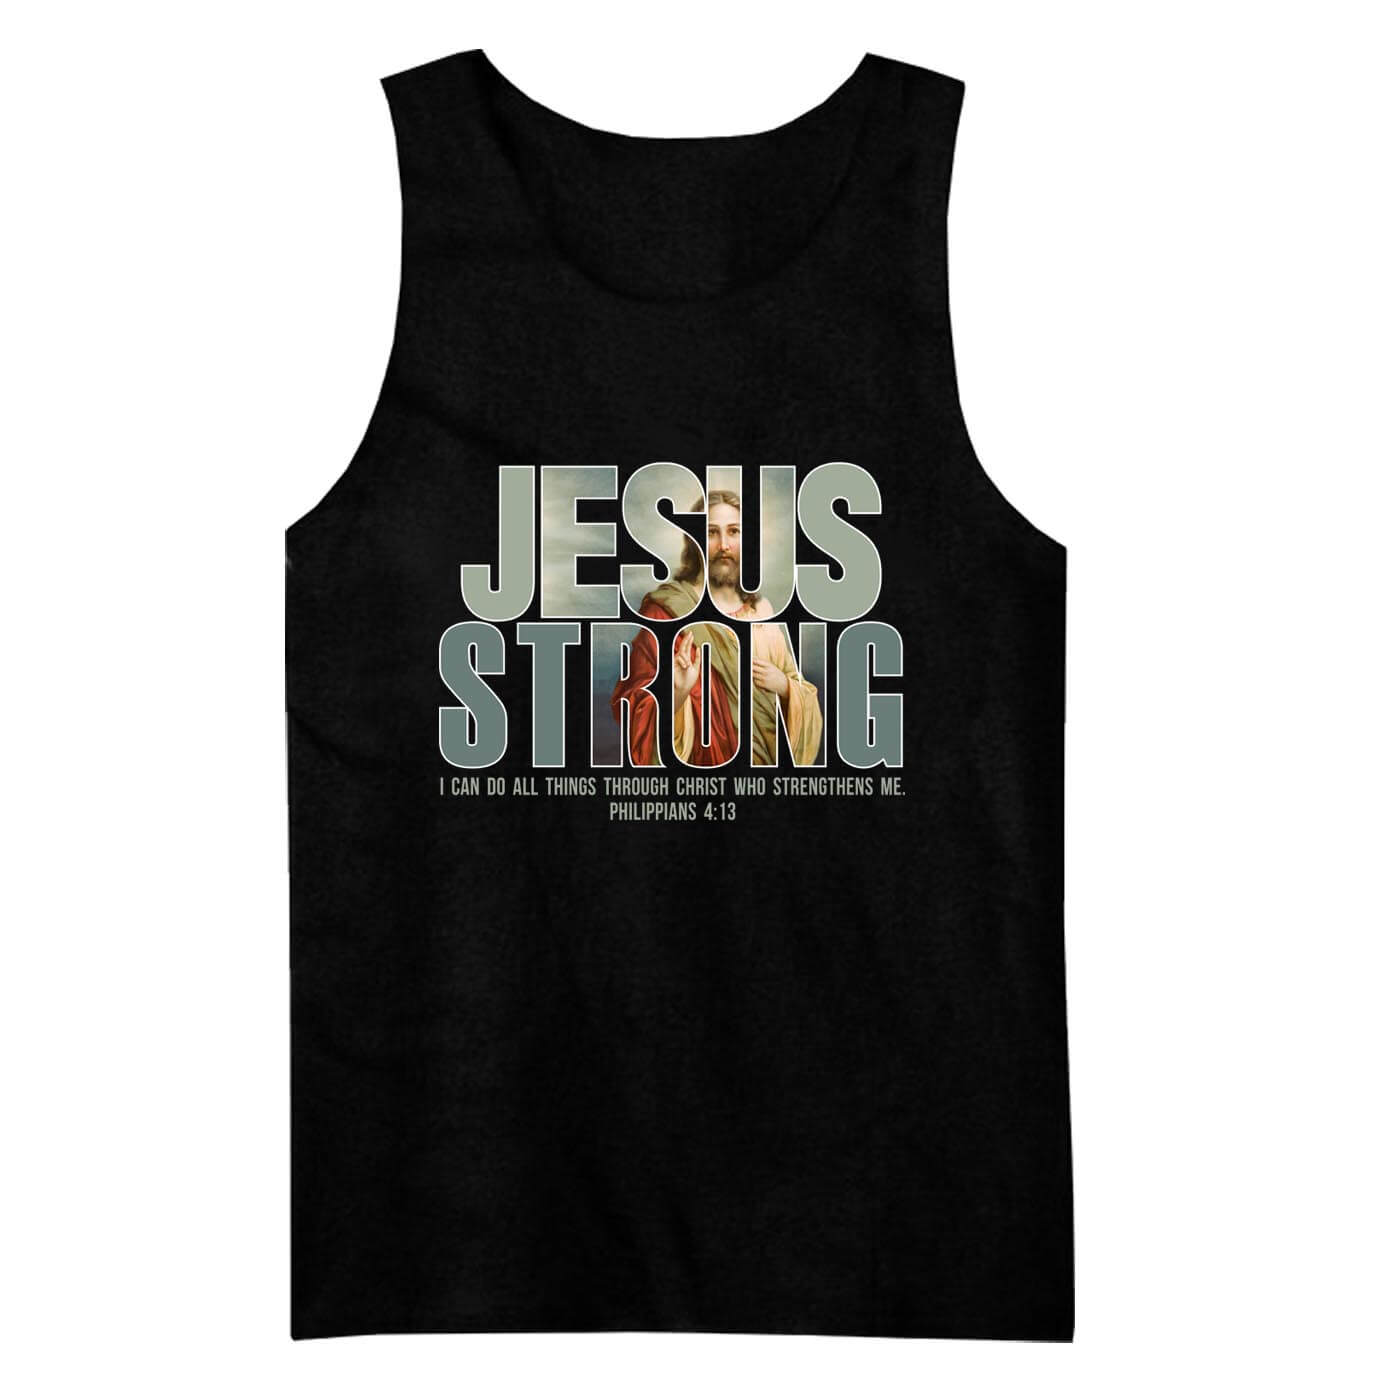 Jesus stark 